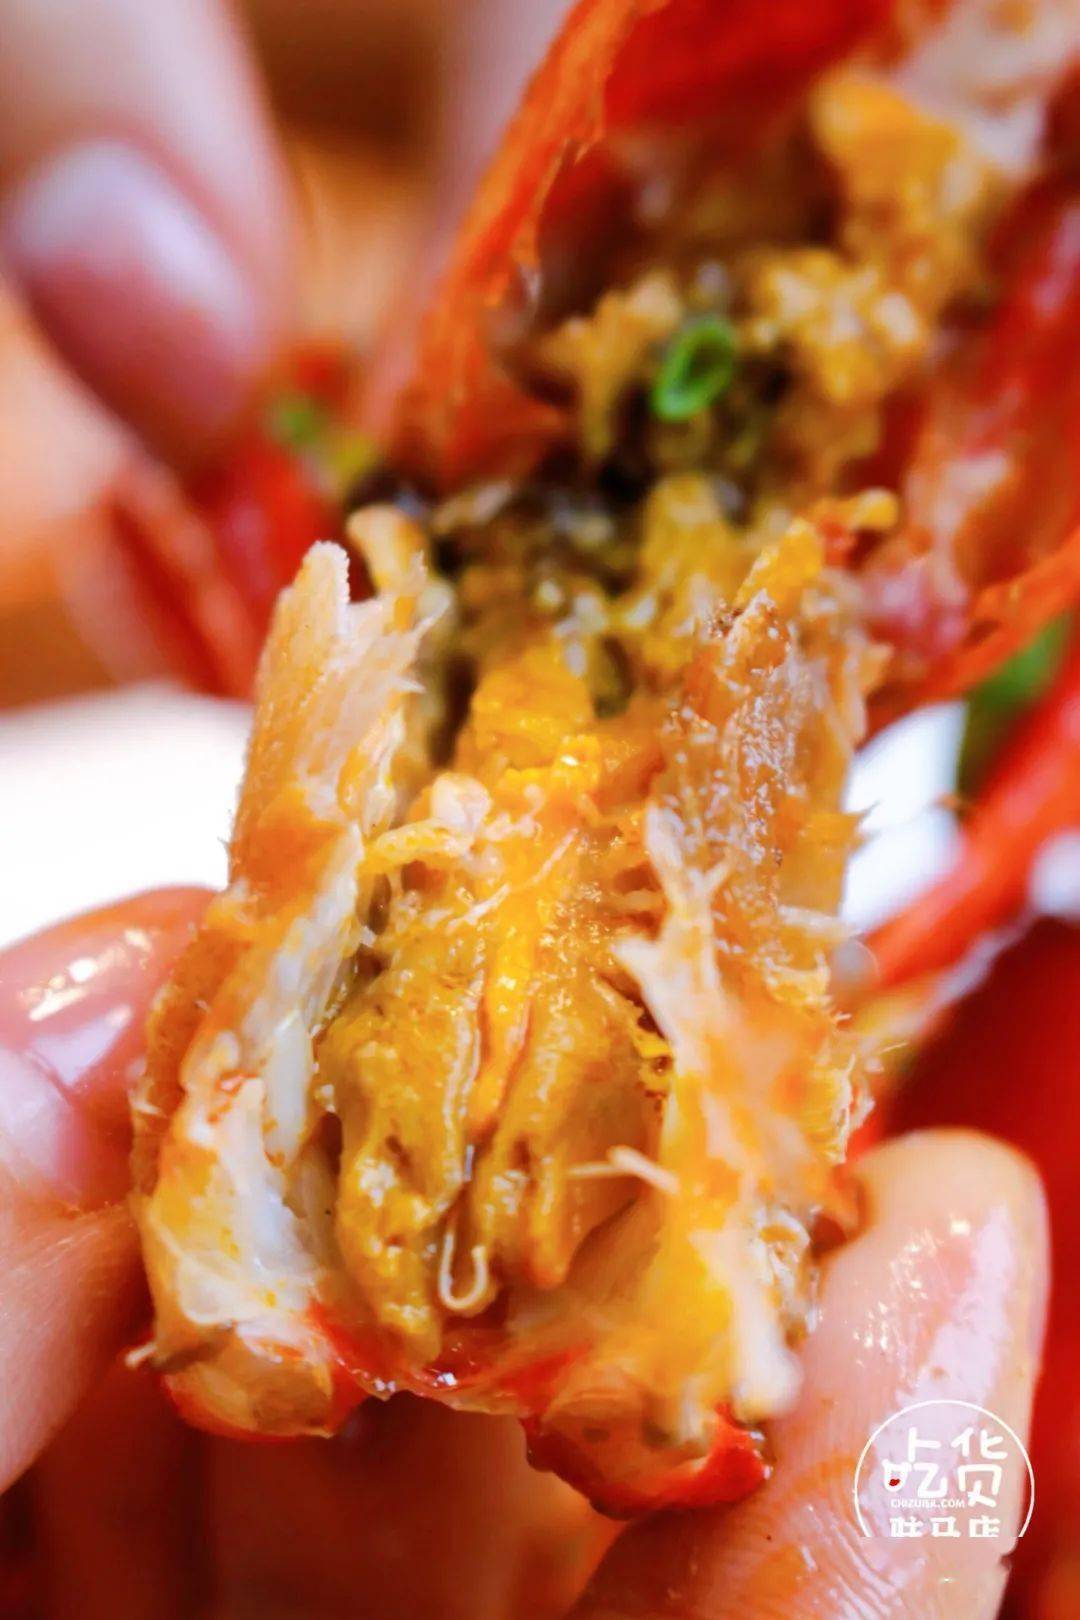 虾皇个顶个的潜江大虾虾黄爆满158元小龙虾套餐